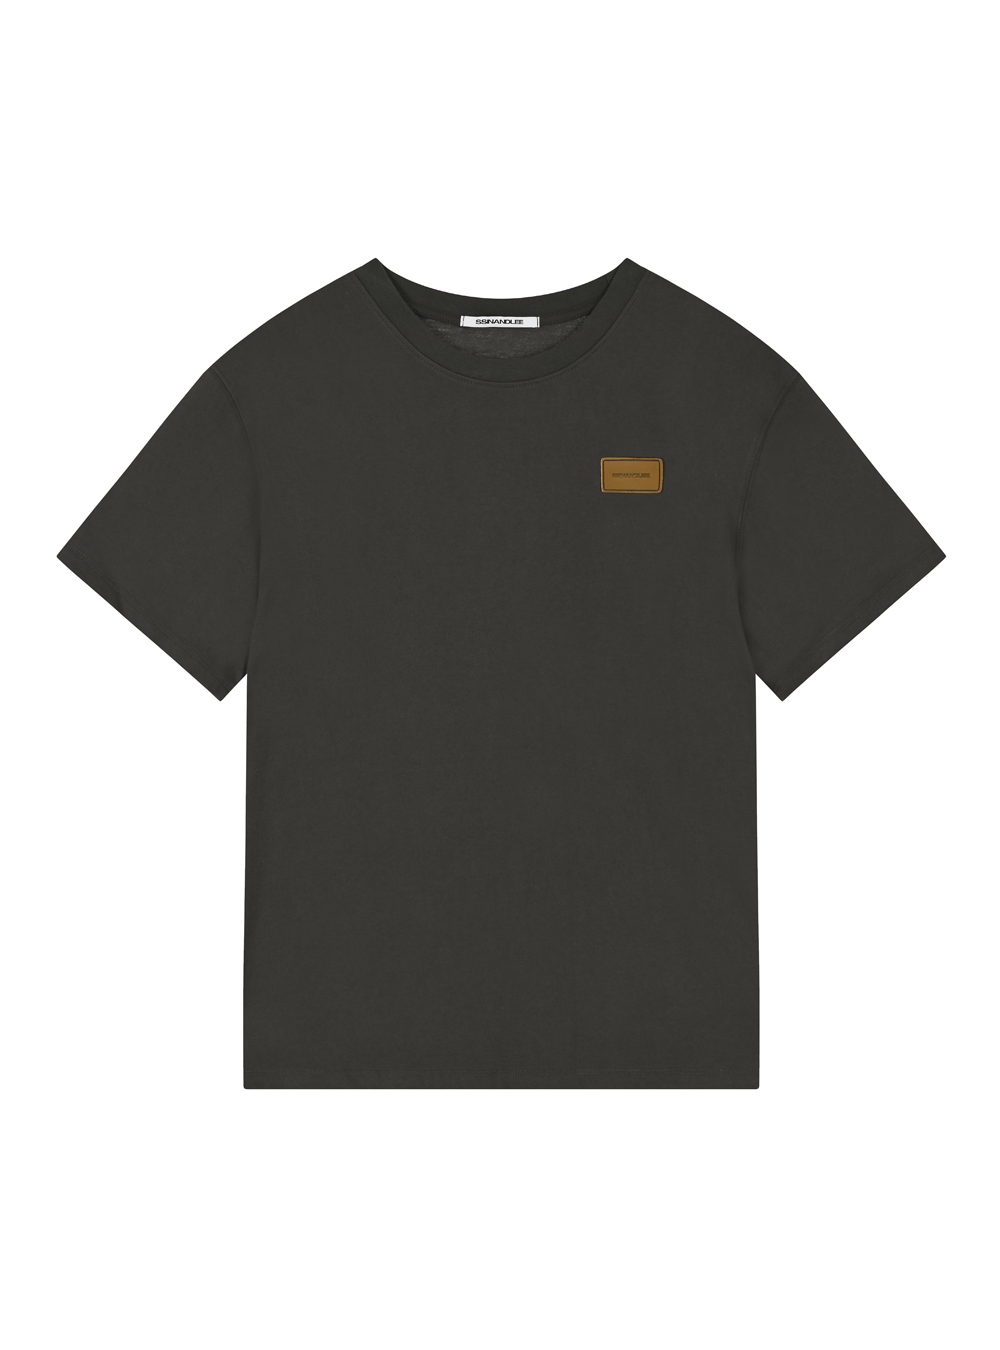 에센셜 레더 라벨 티셔츠 차콜Essential leather label T-shirt charcoal